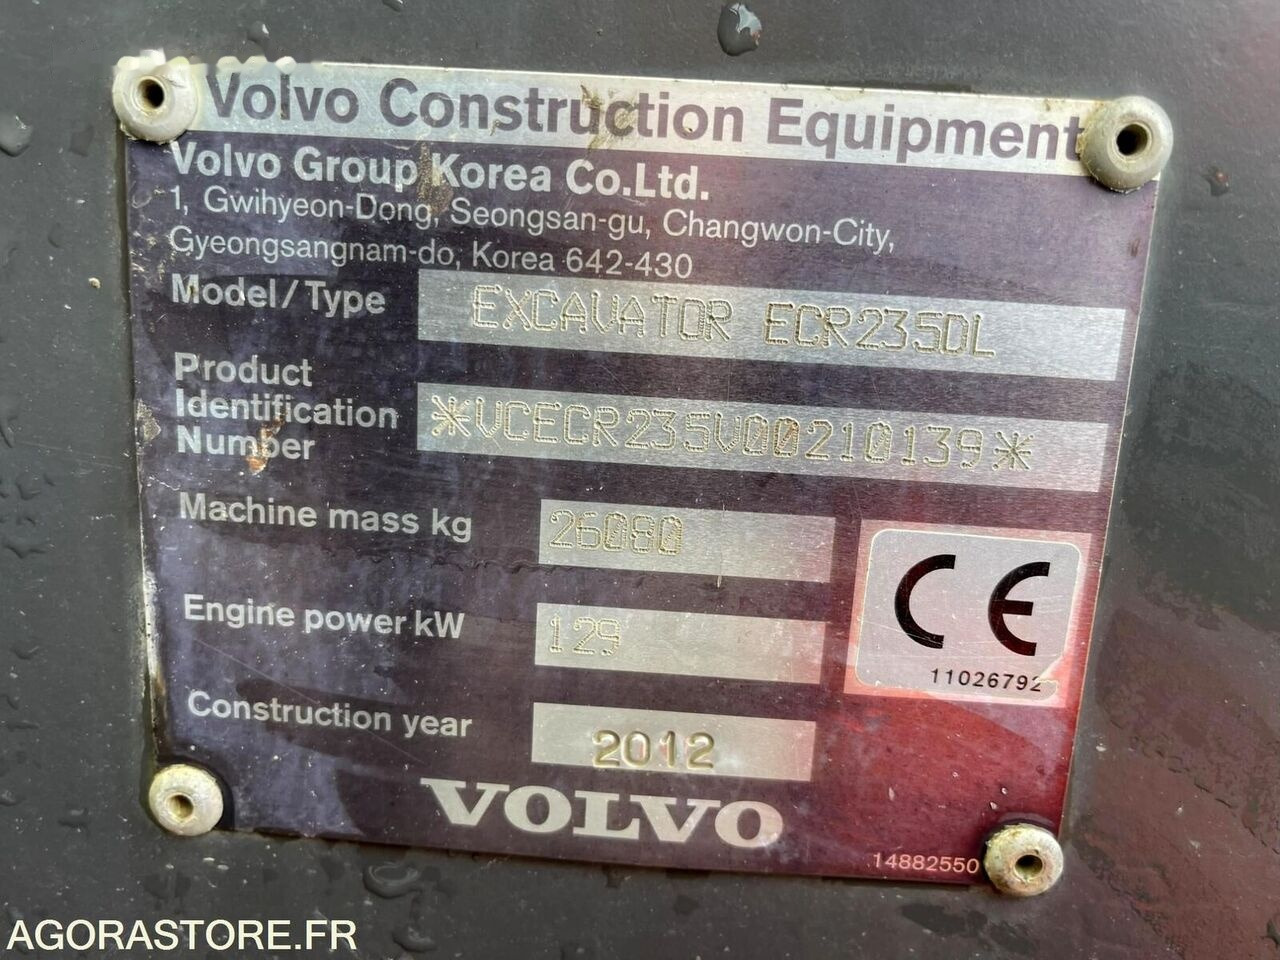 Crawler excavator Volvo ECR235 DL: picture 50